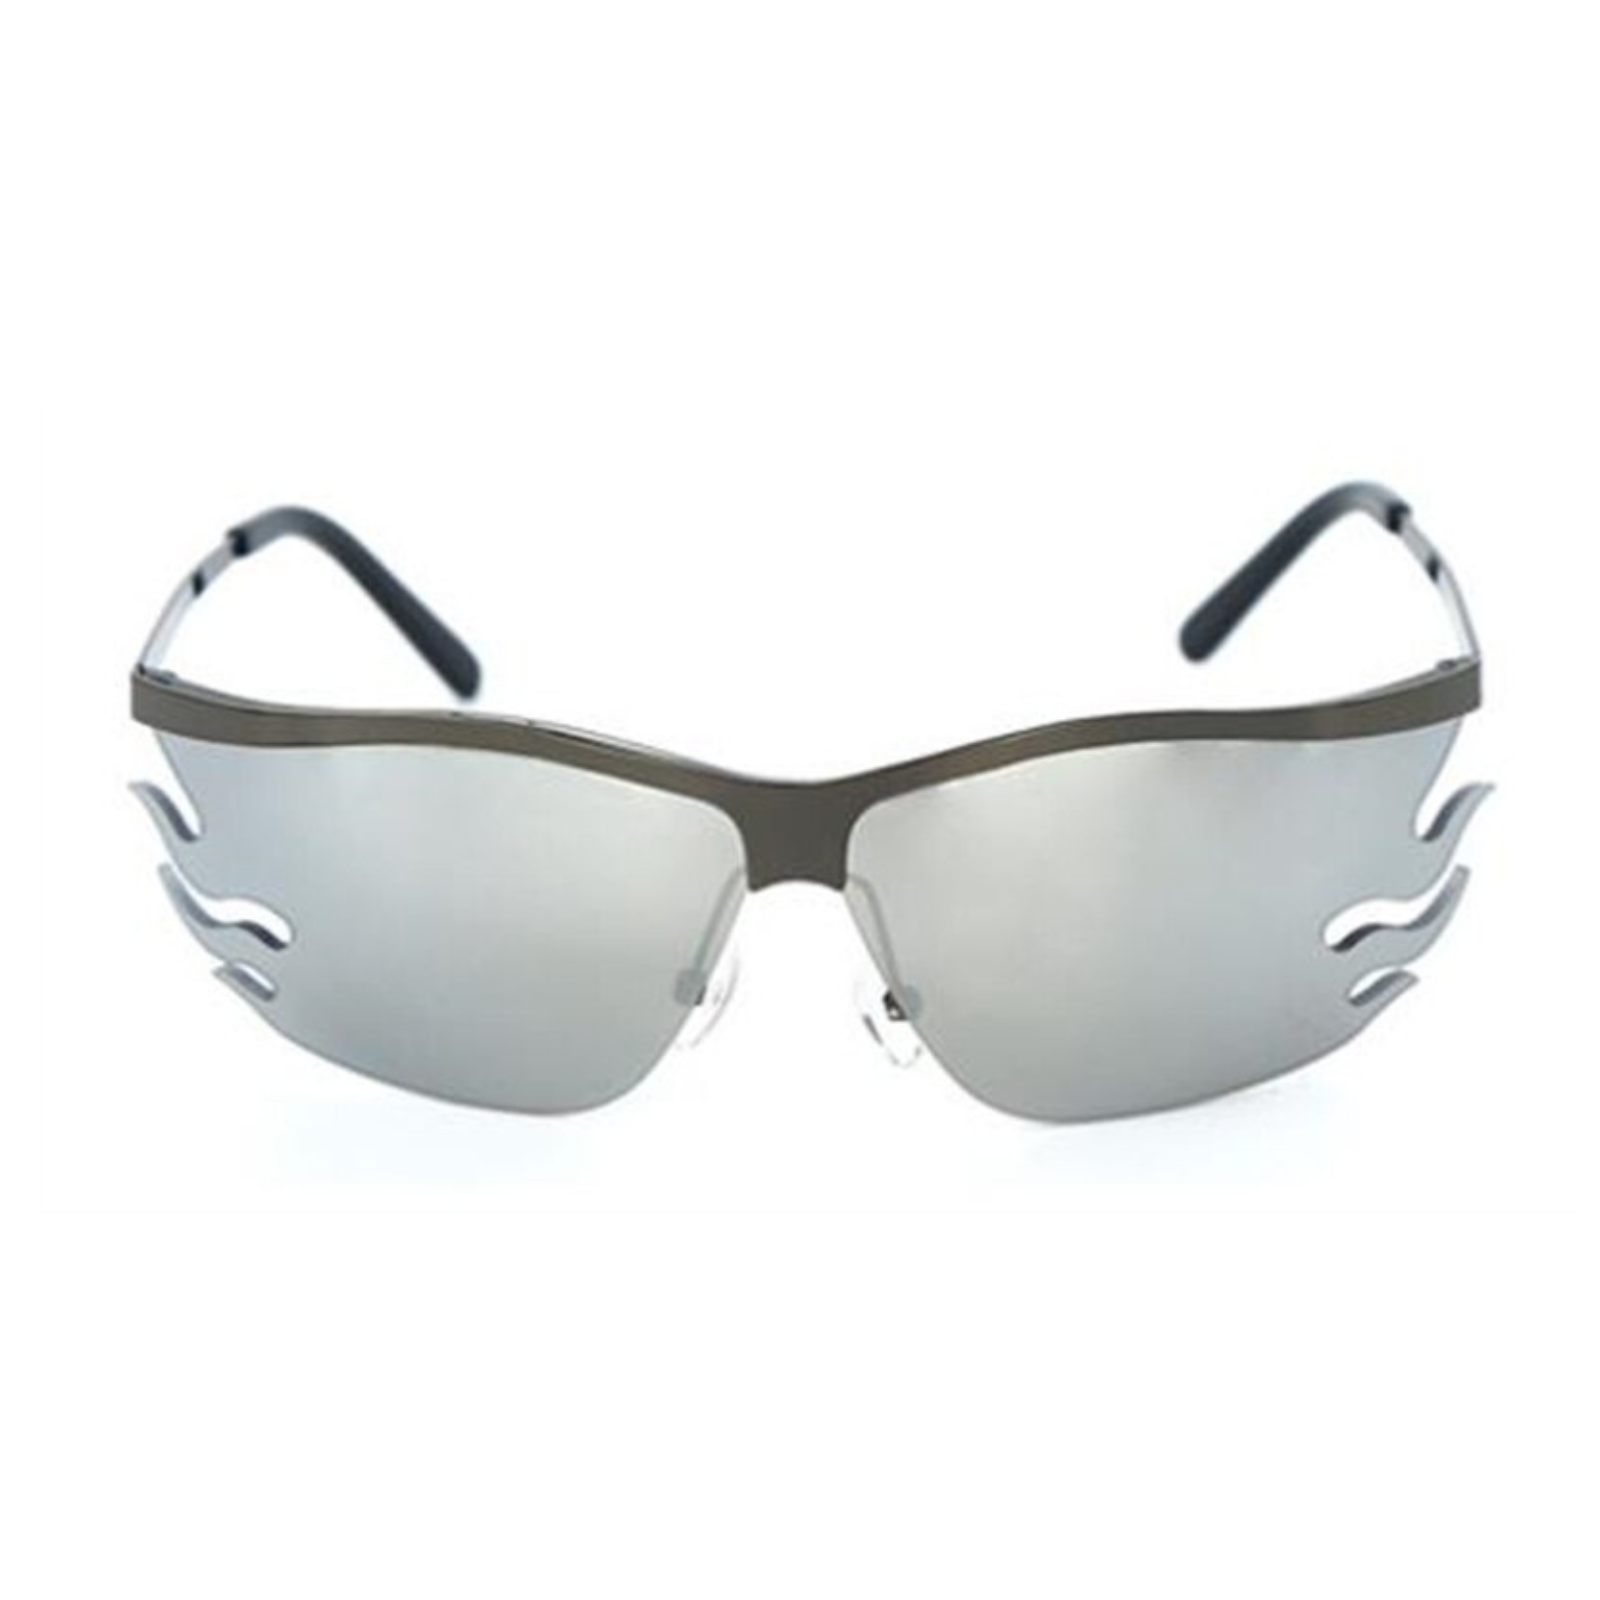 Fire Sunglasses (Silver)